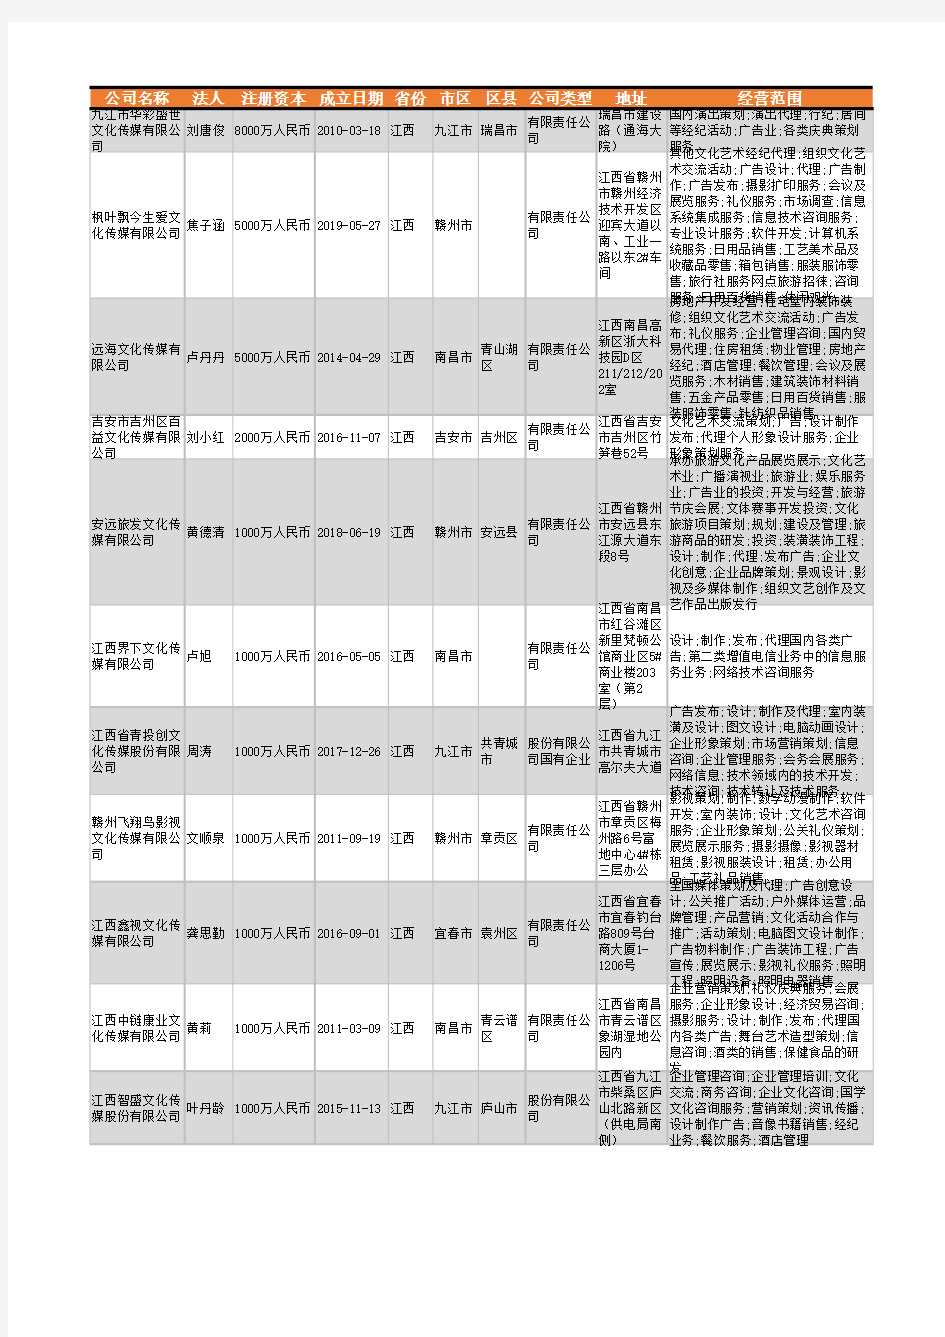 2021年江西省文化传媒公司企业名录1305家